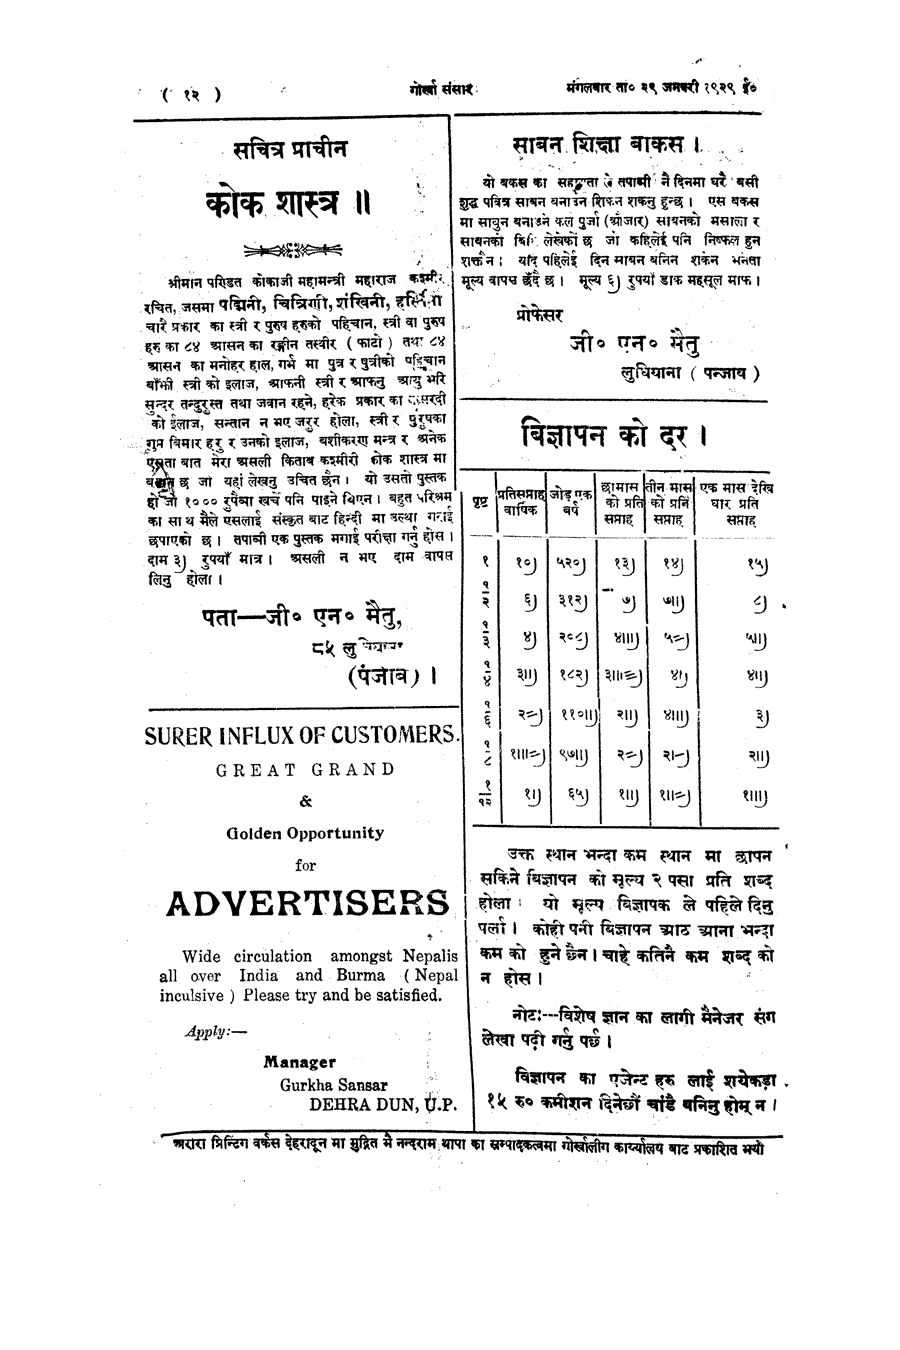 Gorkha Sansar, 29 Jan 1929, page 12